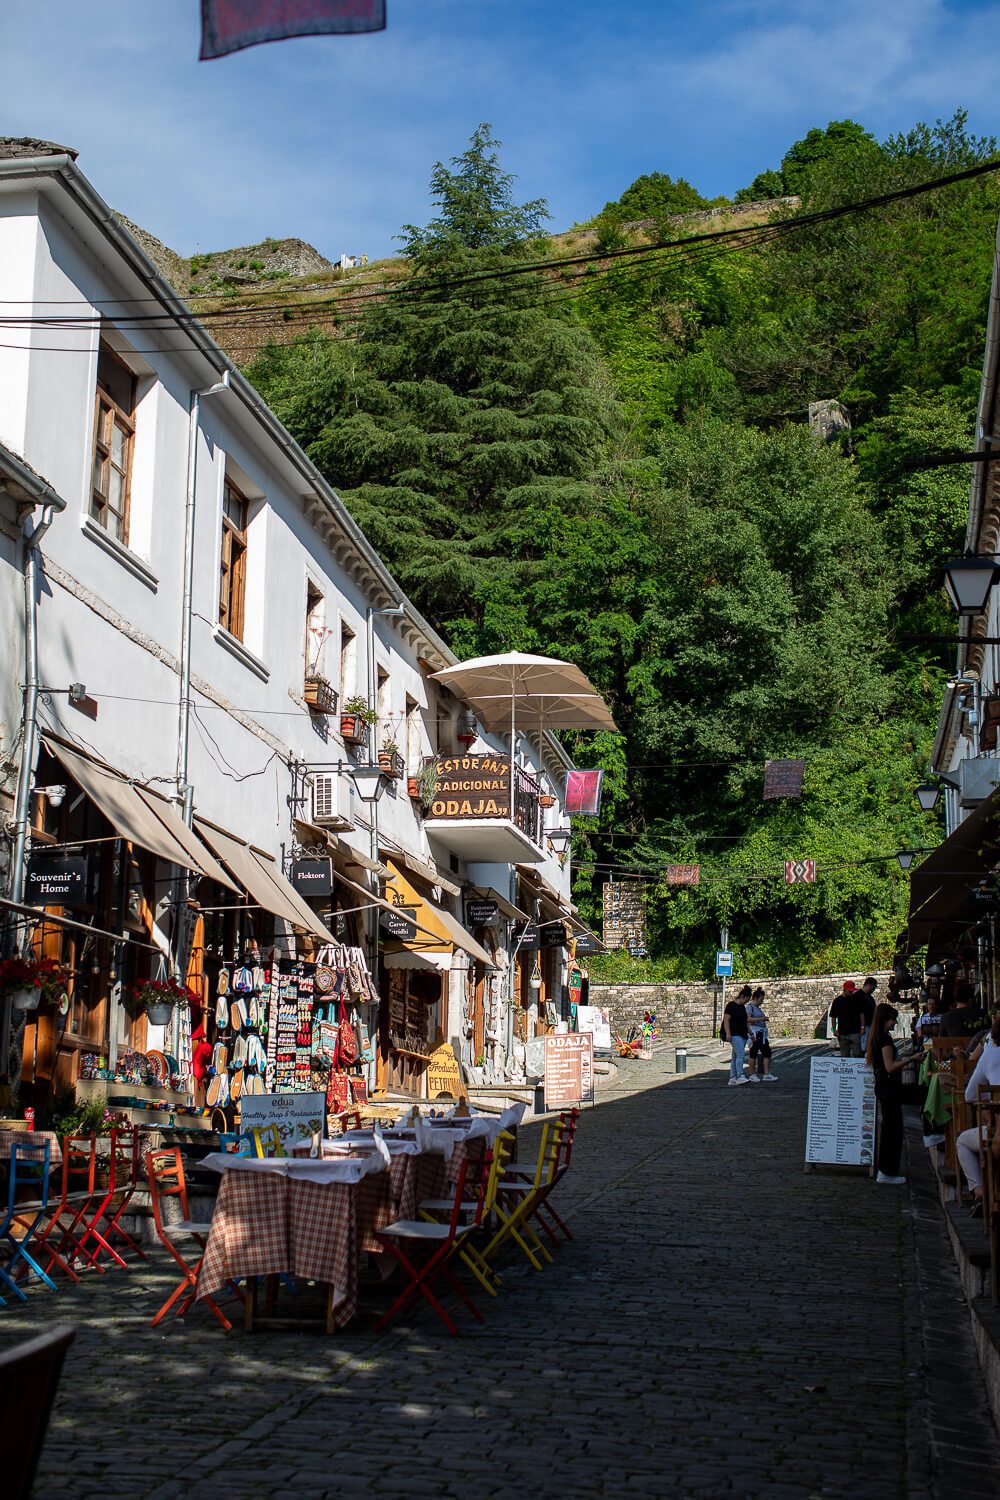 Old Bazaar in Gjirokaster